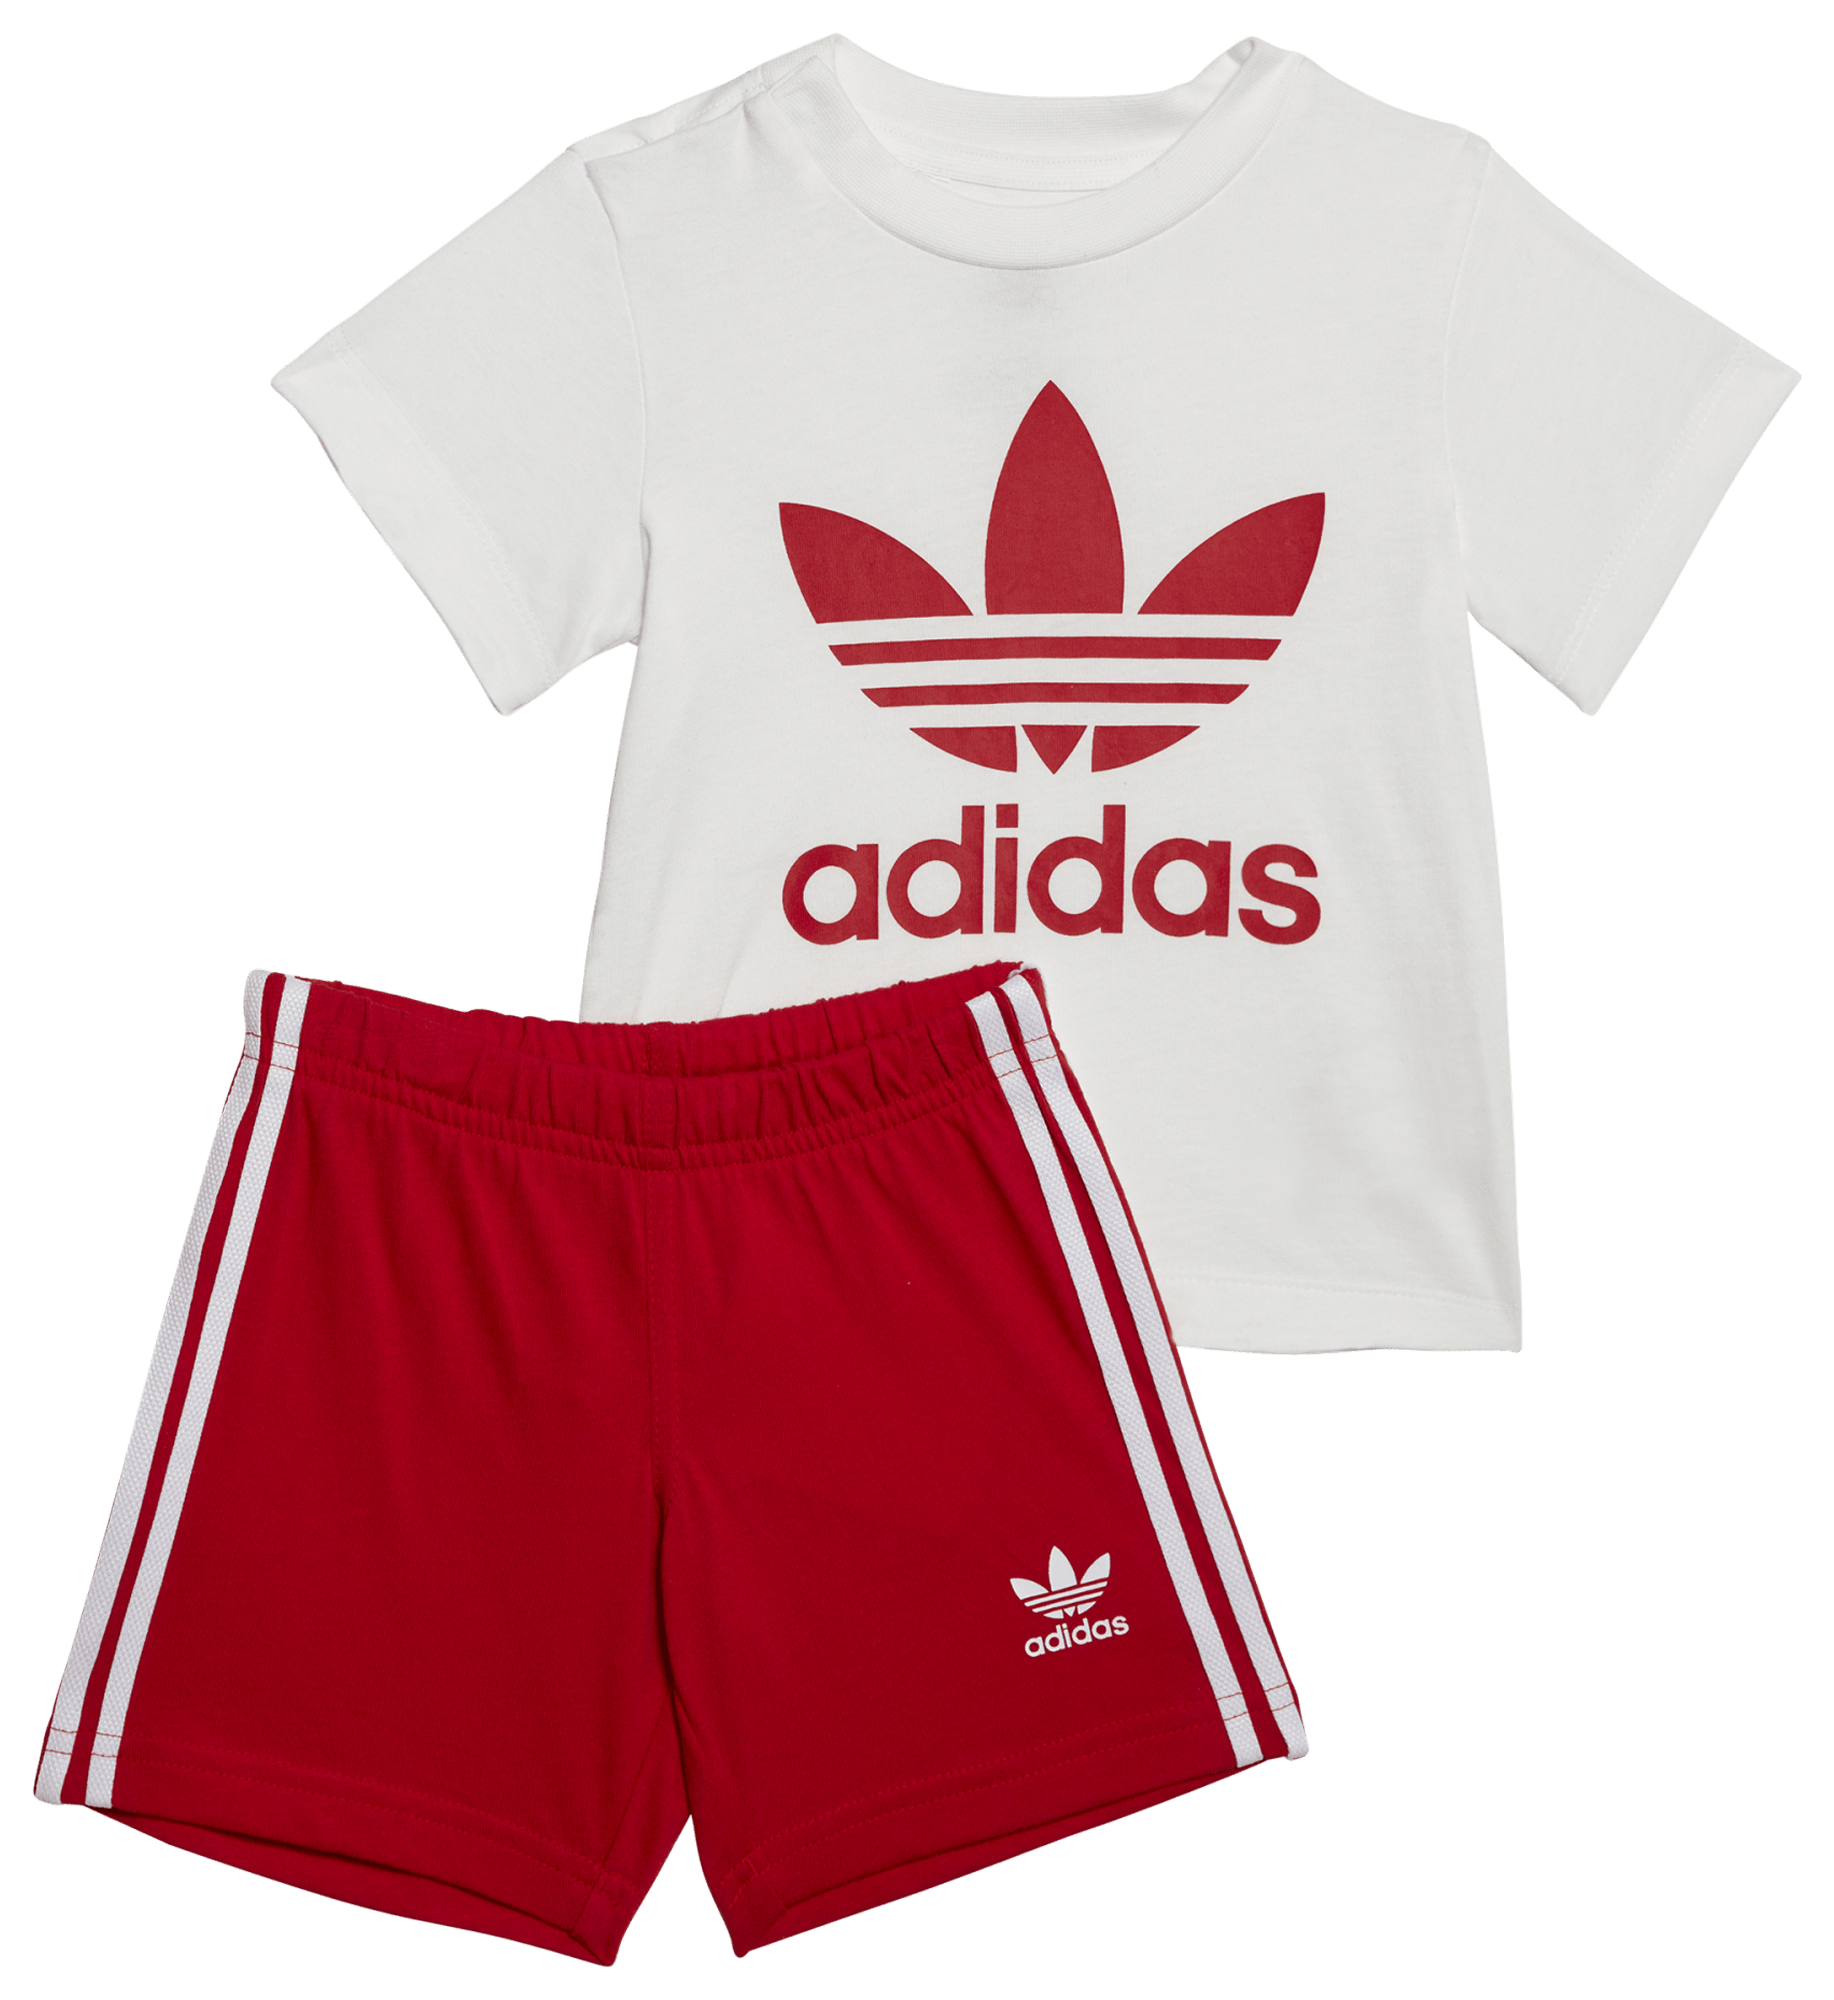 adidas Shorts and T-Shirt Set - Boys' Toddler